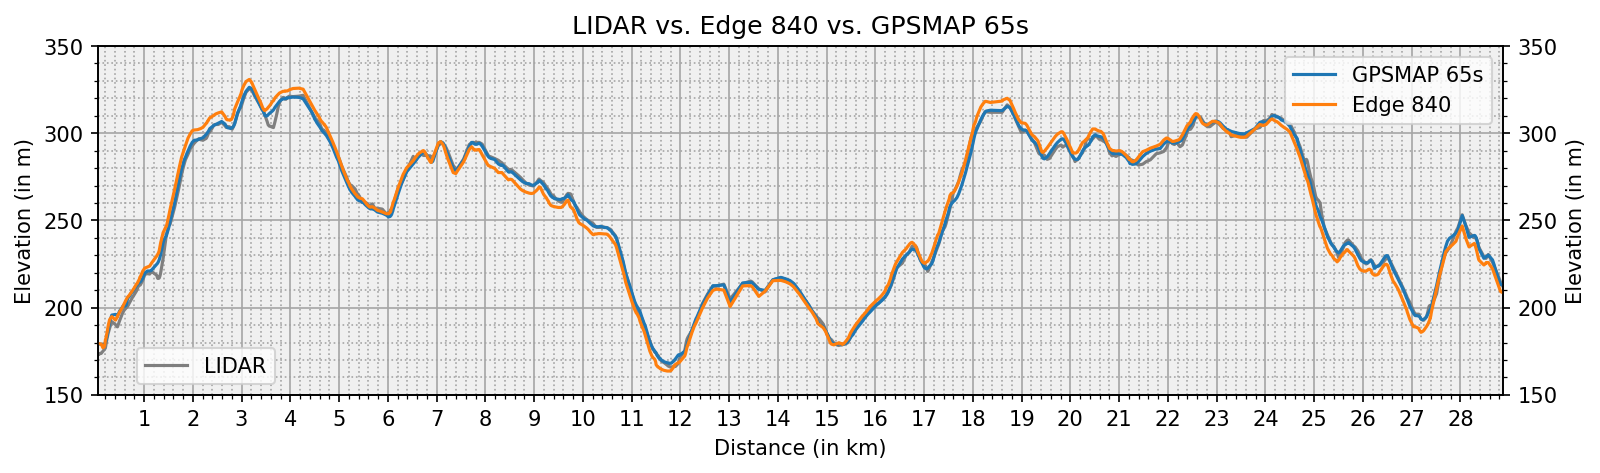 lidar_vs_edge840_vs_gpsmap65s.png